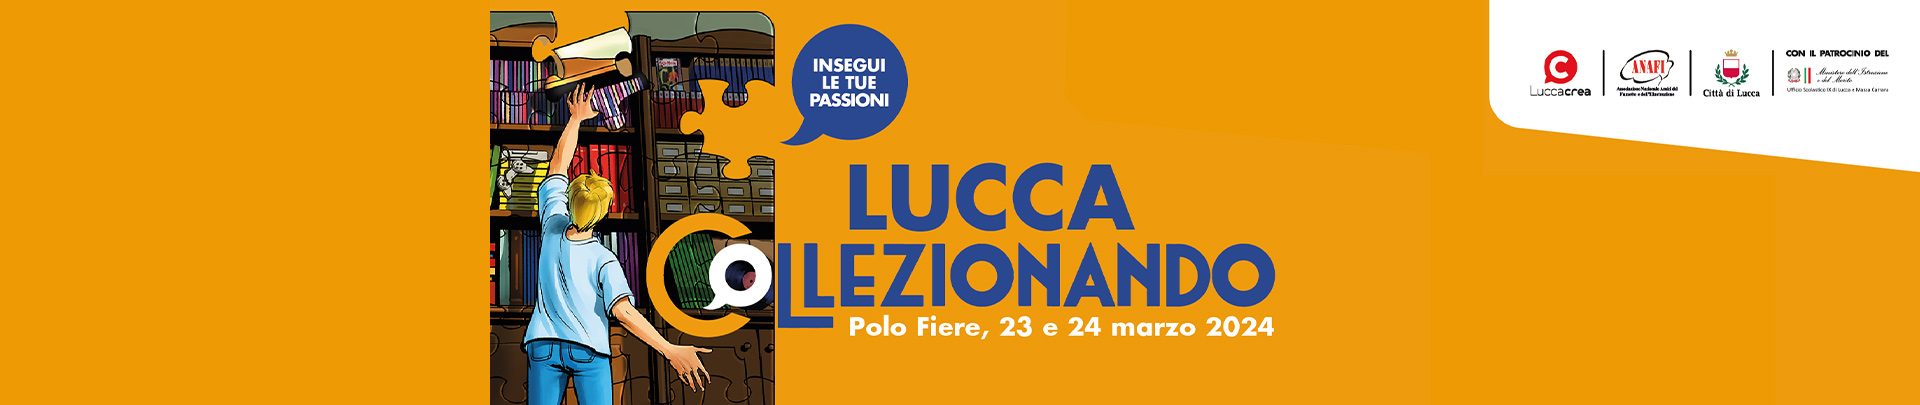 Lucca Collezionando torna nel 2022